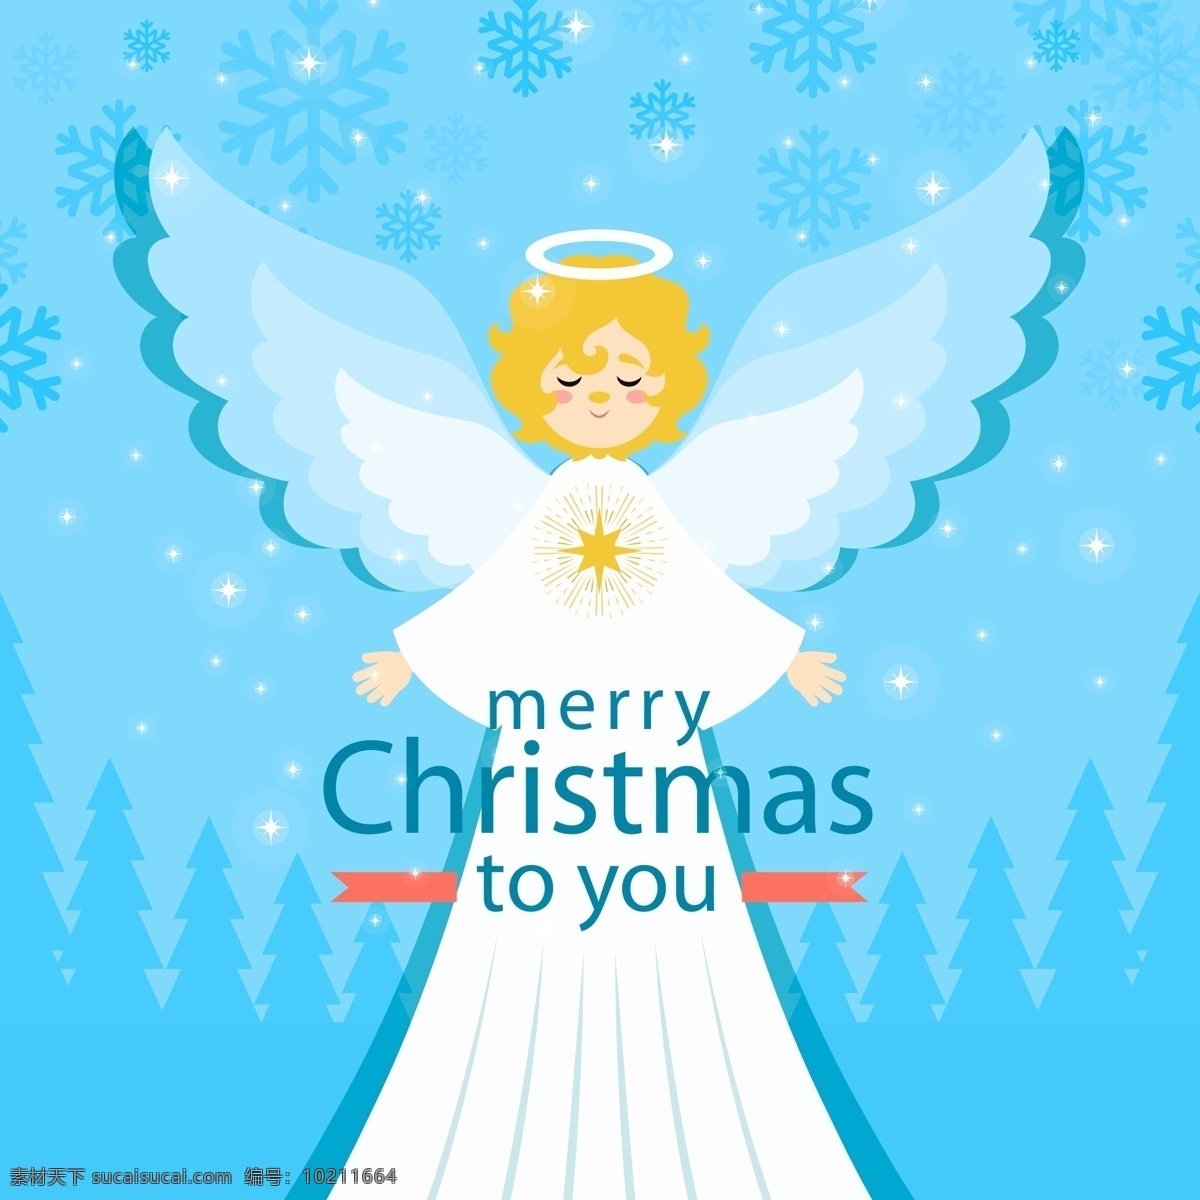 可爱 金发 白衣 圣诞 天使 矢量图 雪花 树林 森林 松树 圣诞节 圣诞天使 文化艺术 节日庆祝